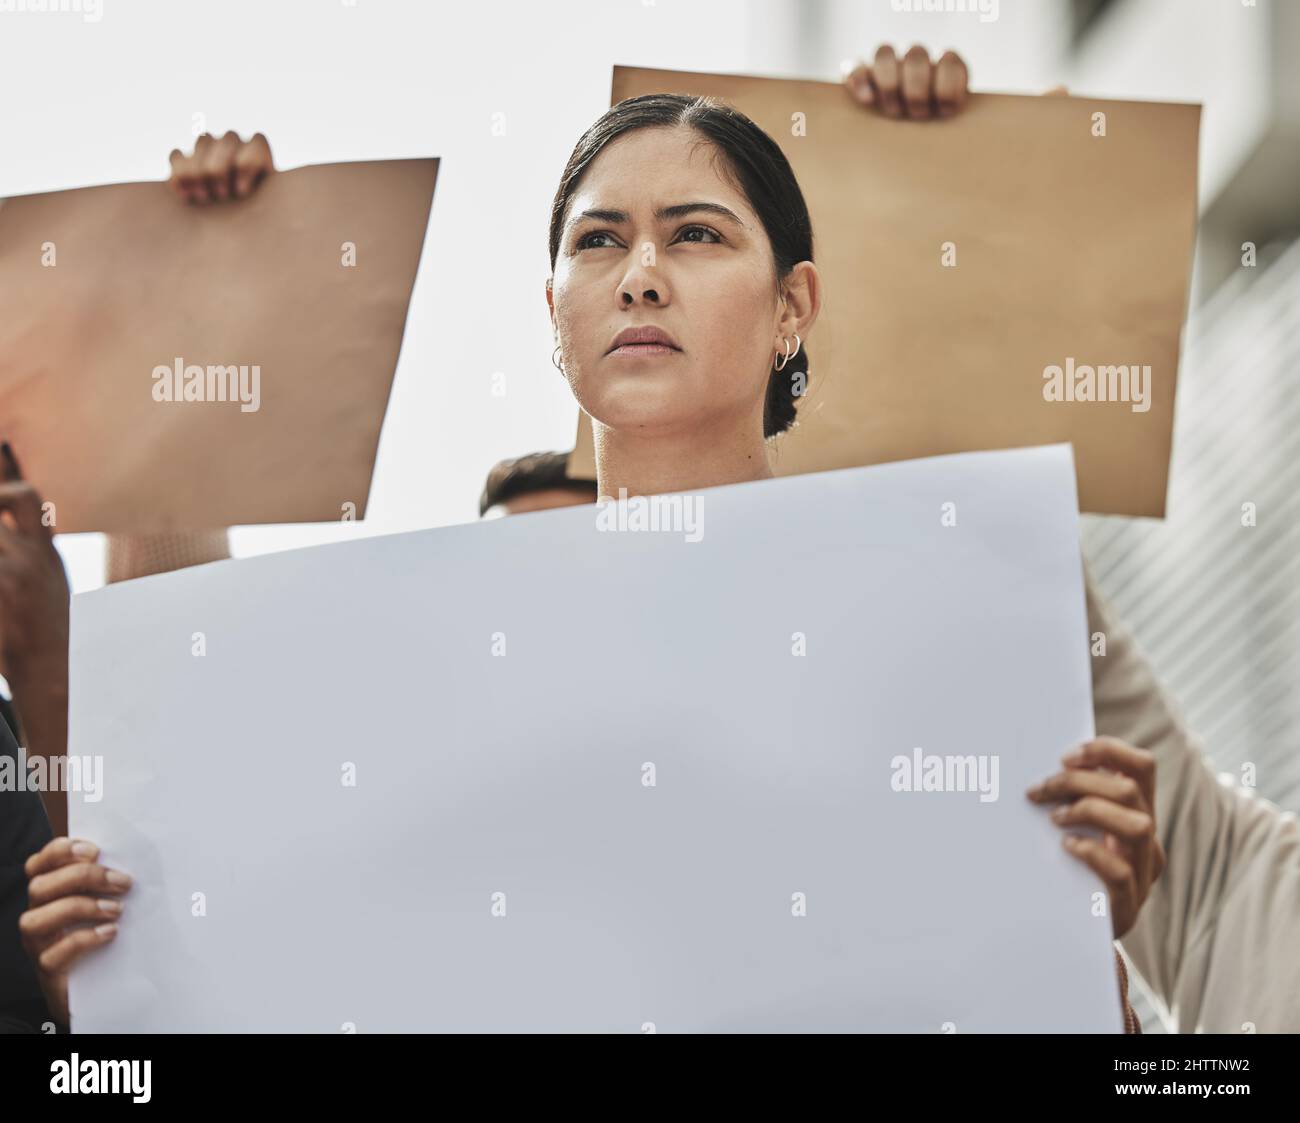 Shes prêt à se battre. Photo sous angle d'une jeune femme attirante tenant un panneau tout en participant à un rallye politique. Banque D'Images